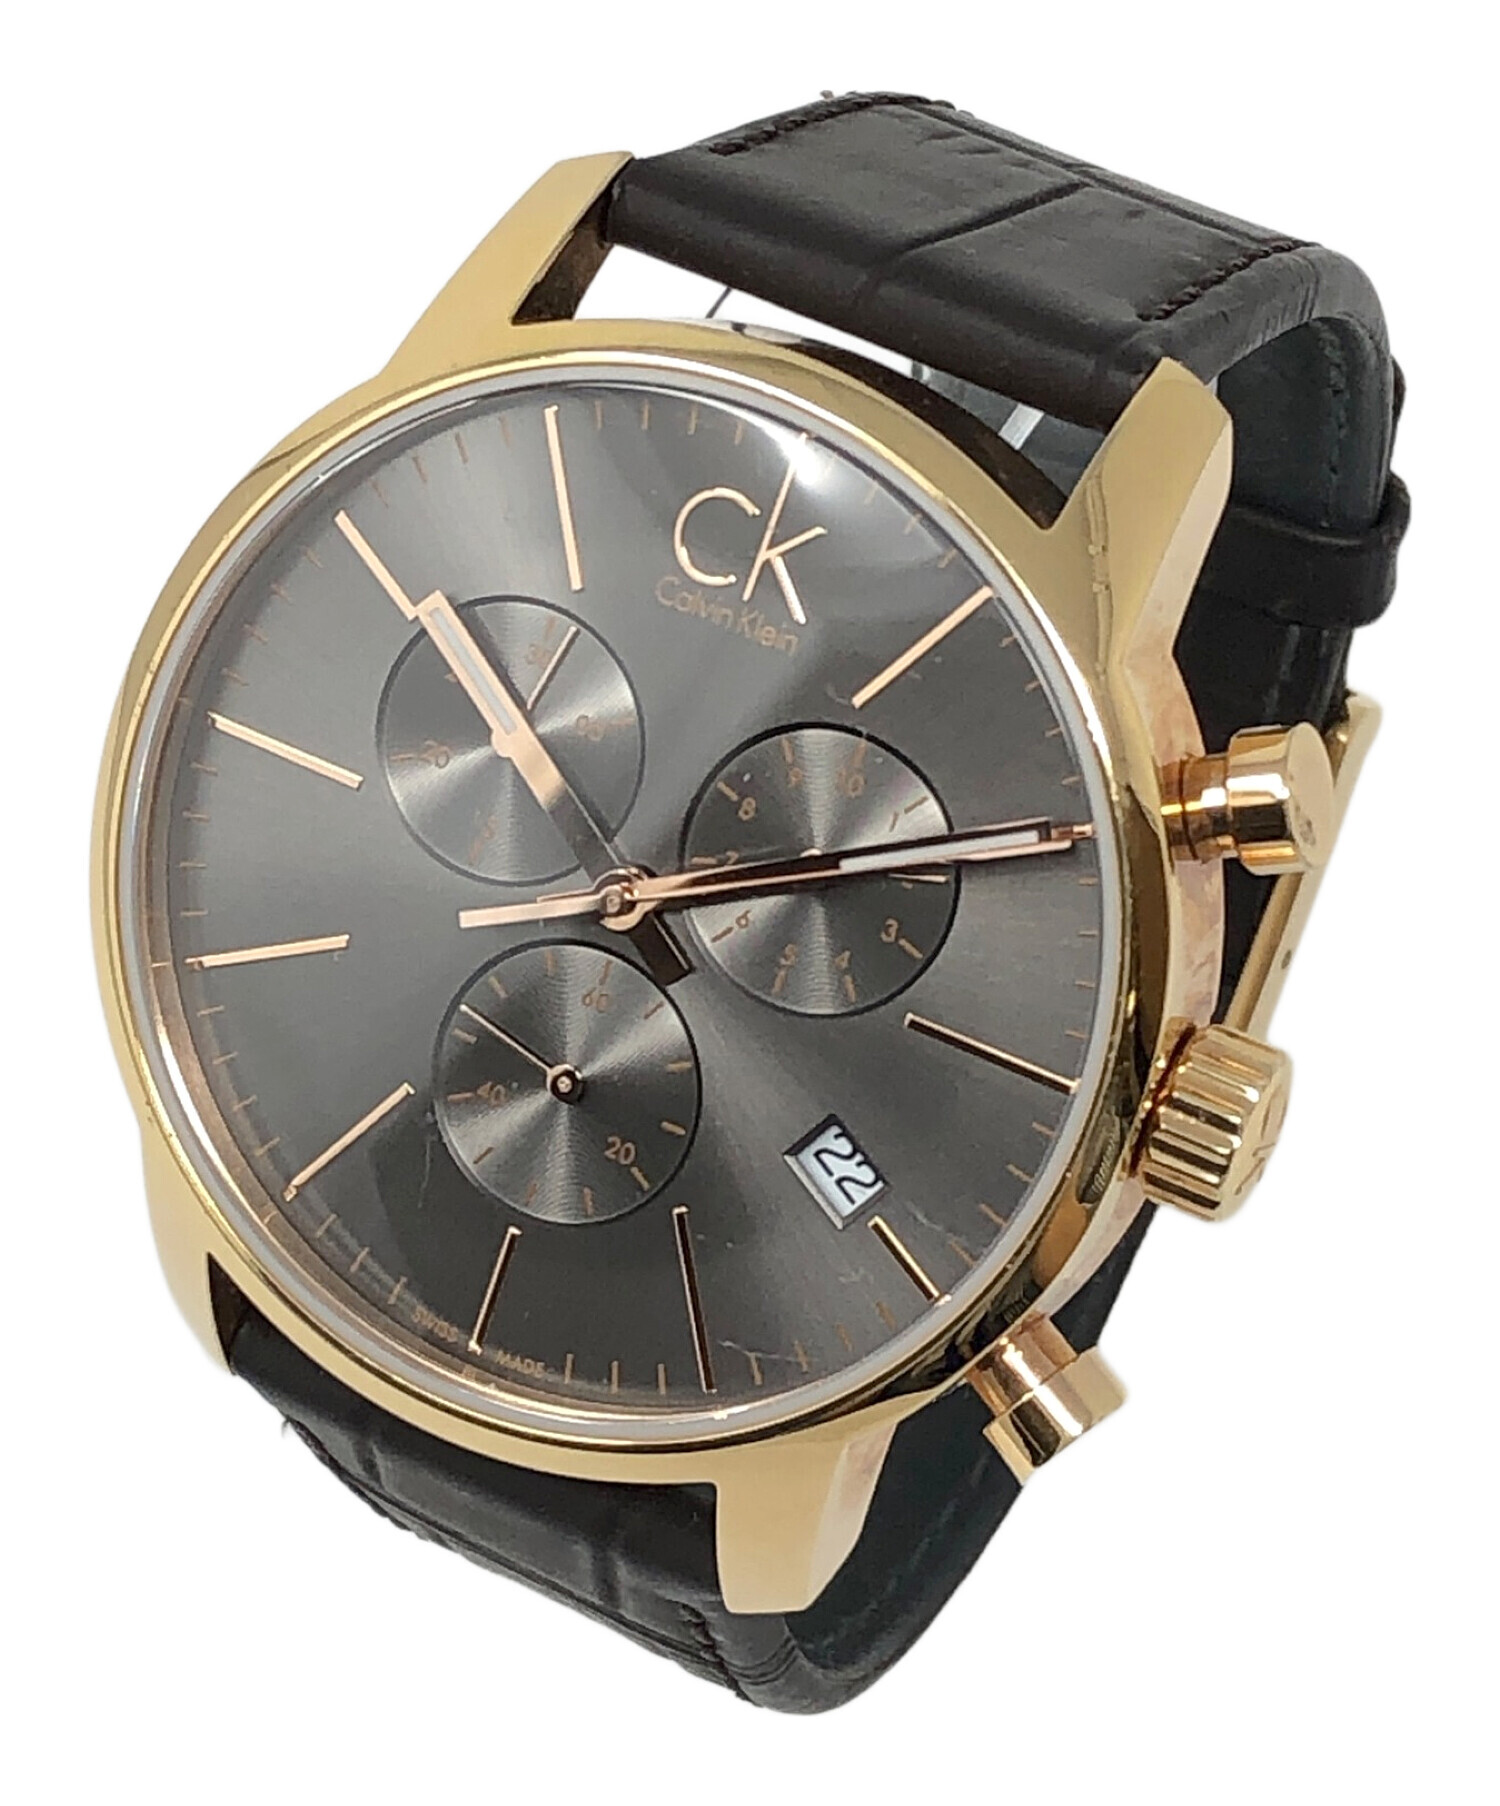 Calvin Klein (カルバンクライン) 腕時計 クロノグラフ クォーツ ブラック サイズ:実寸サイズにてご確認ください。